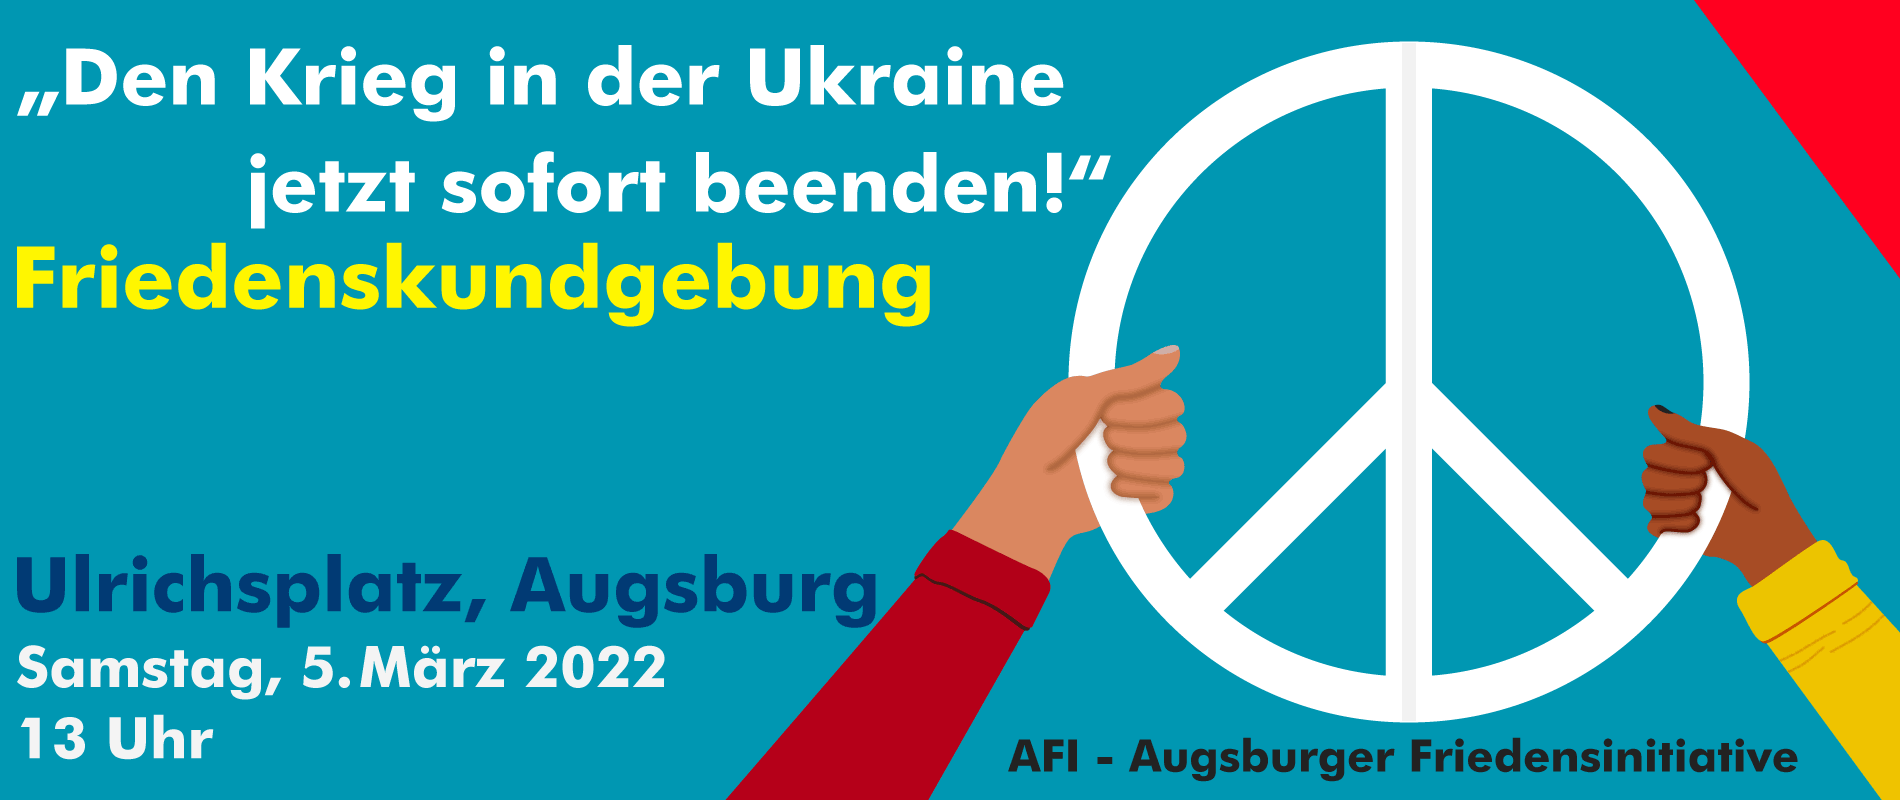 Friedenskundgebung Augsburg, Ukraine, AFI - Augsburger Friedensinitiative.